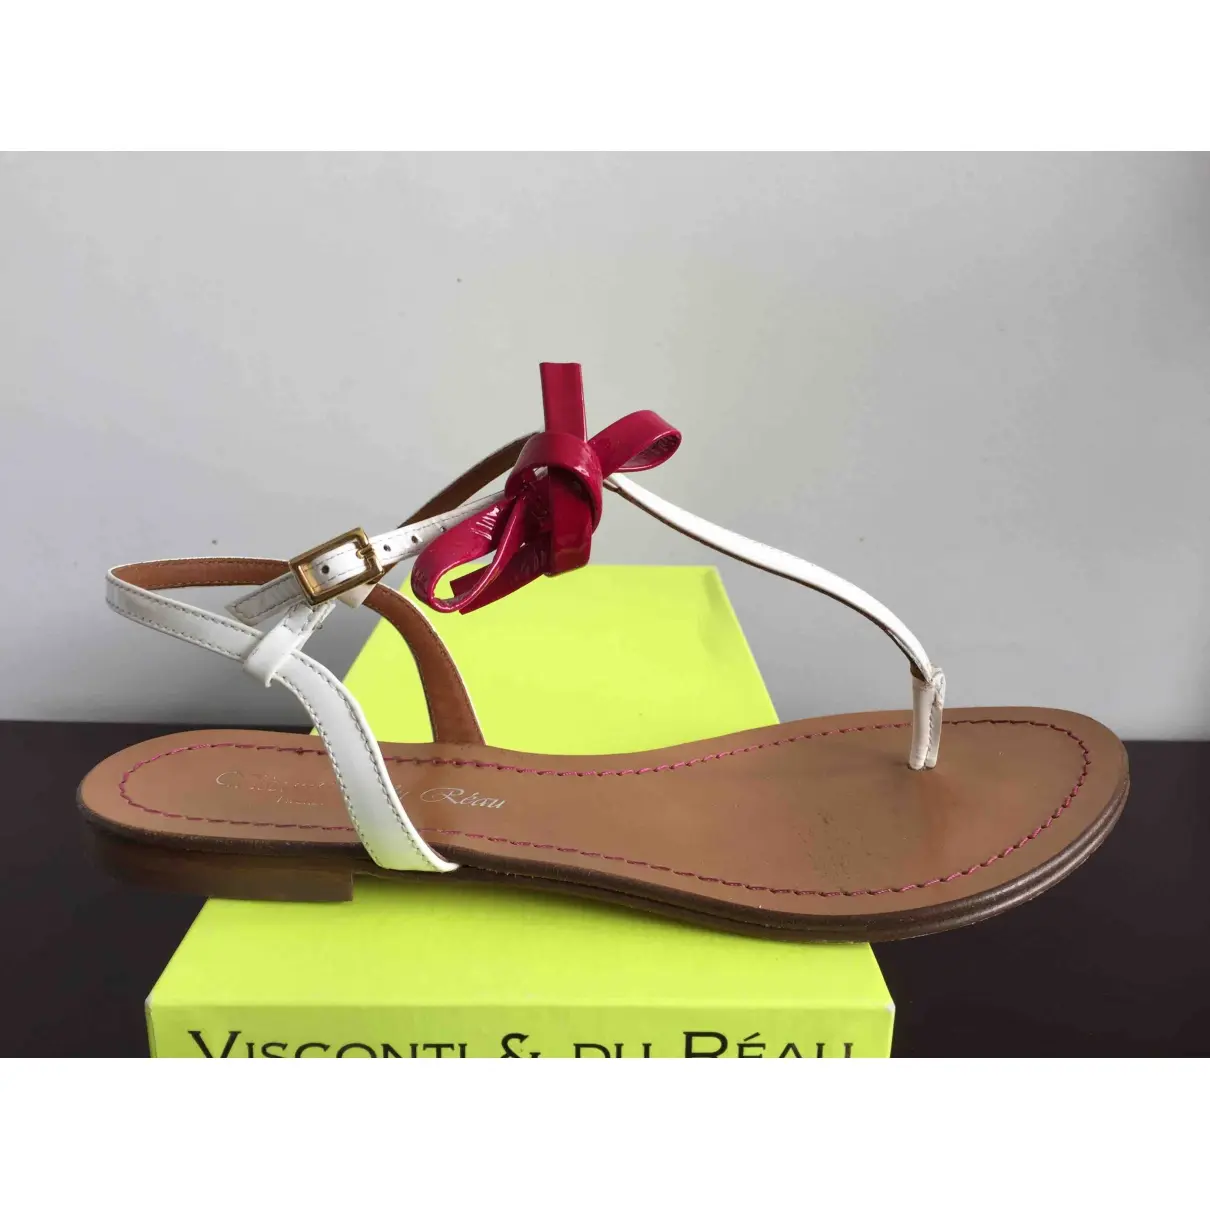 Visconti & Du Reau Leather flip flops for sale